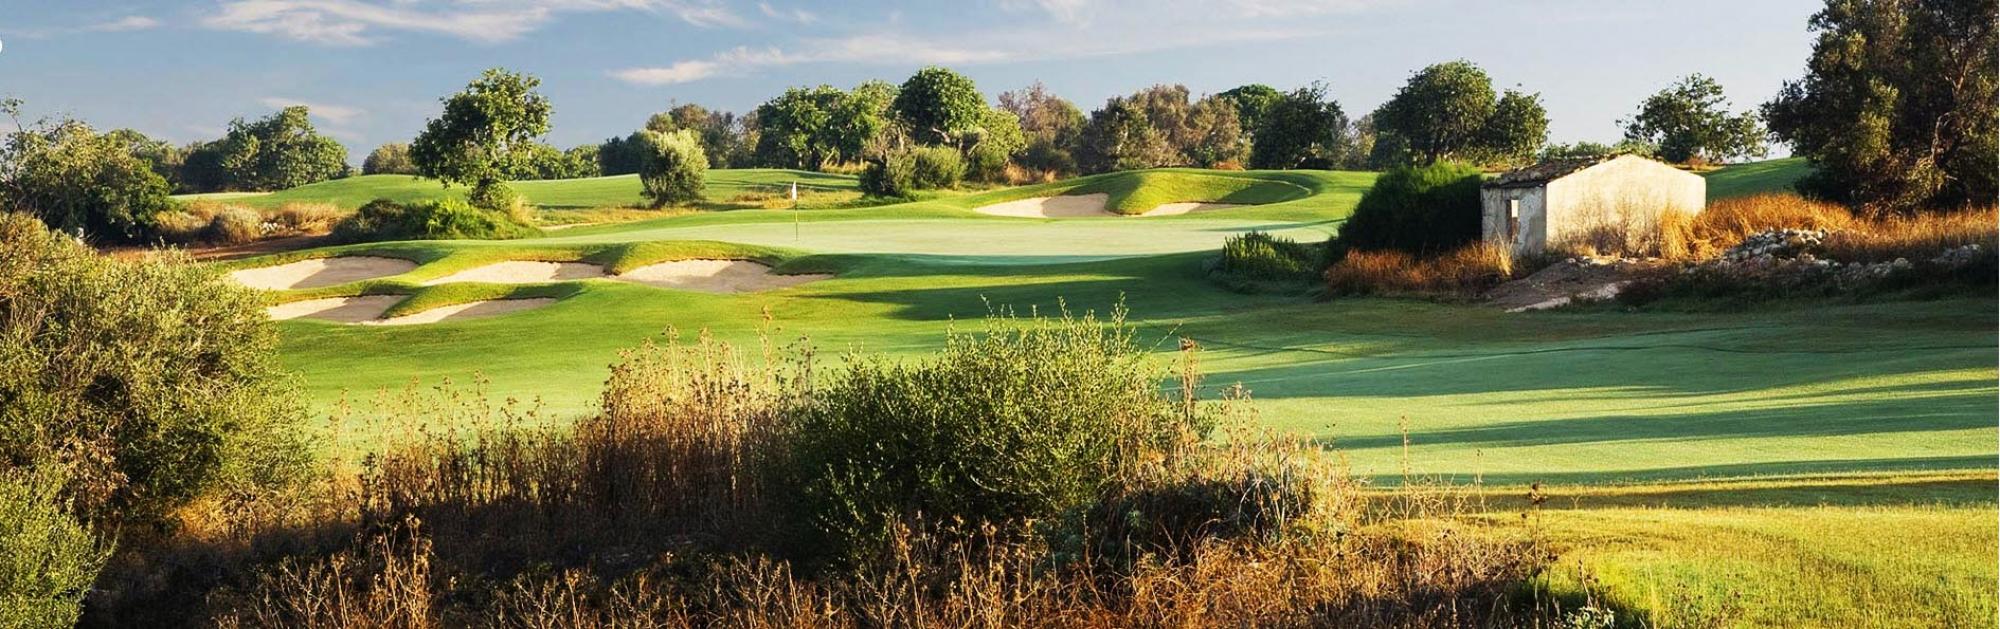 Donnafugata Golf Club provides several of the premiere golf course near Sicily